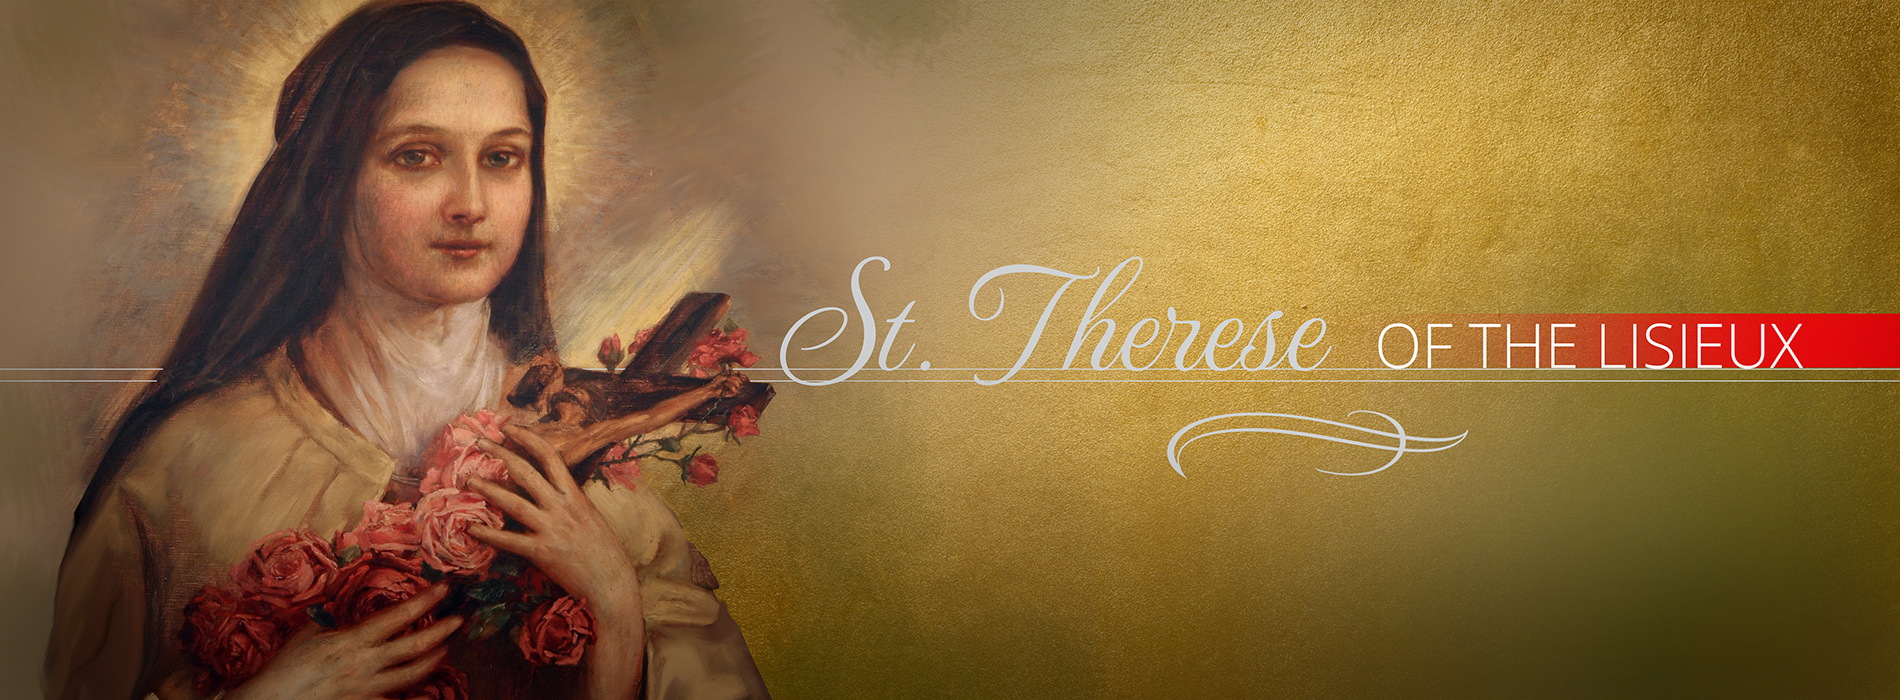 St. Thérèse of Lisieux - The Little Flower